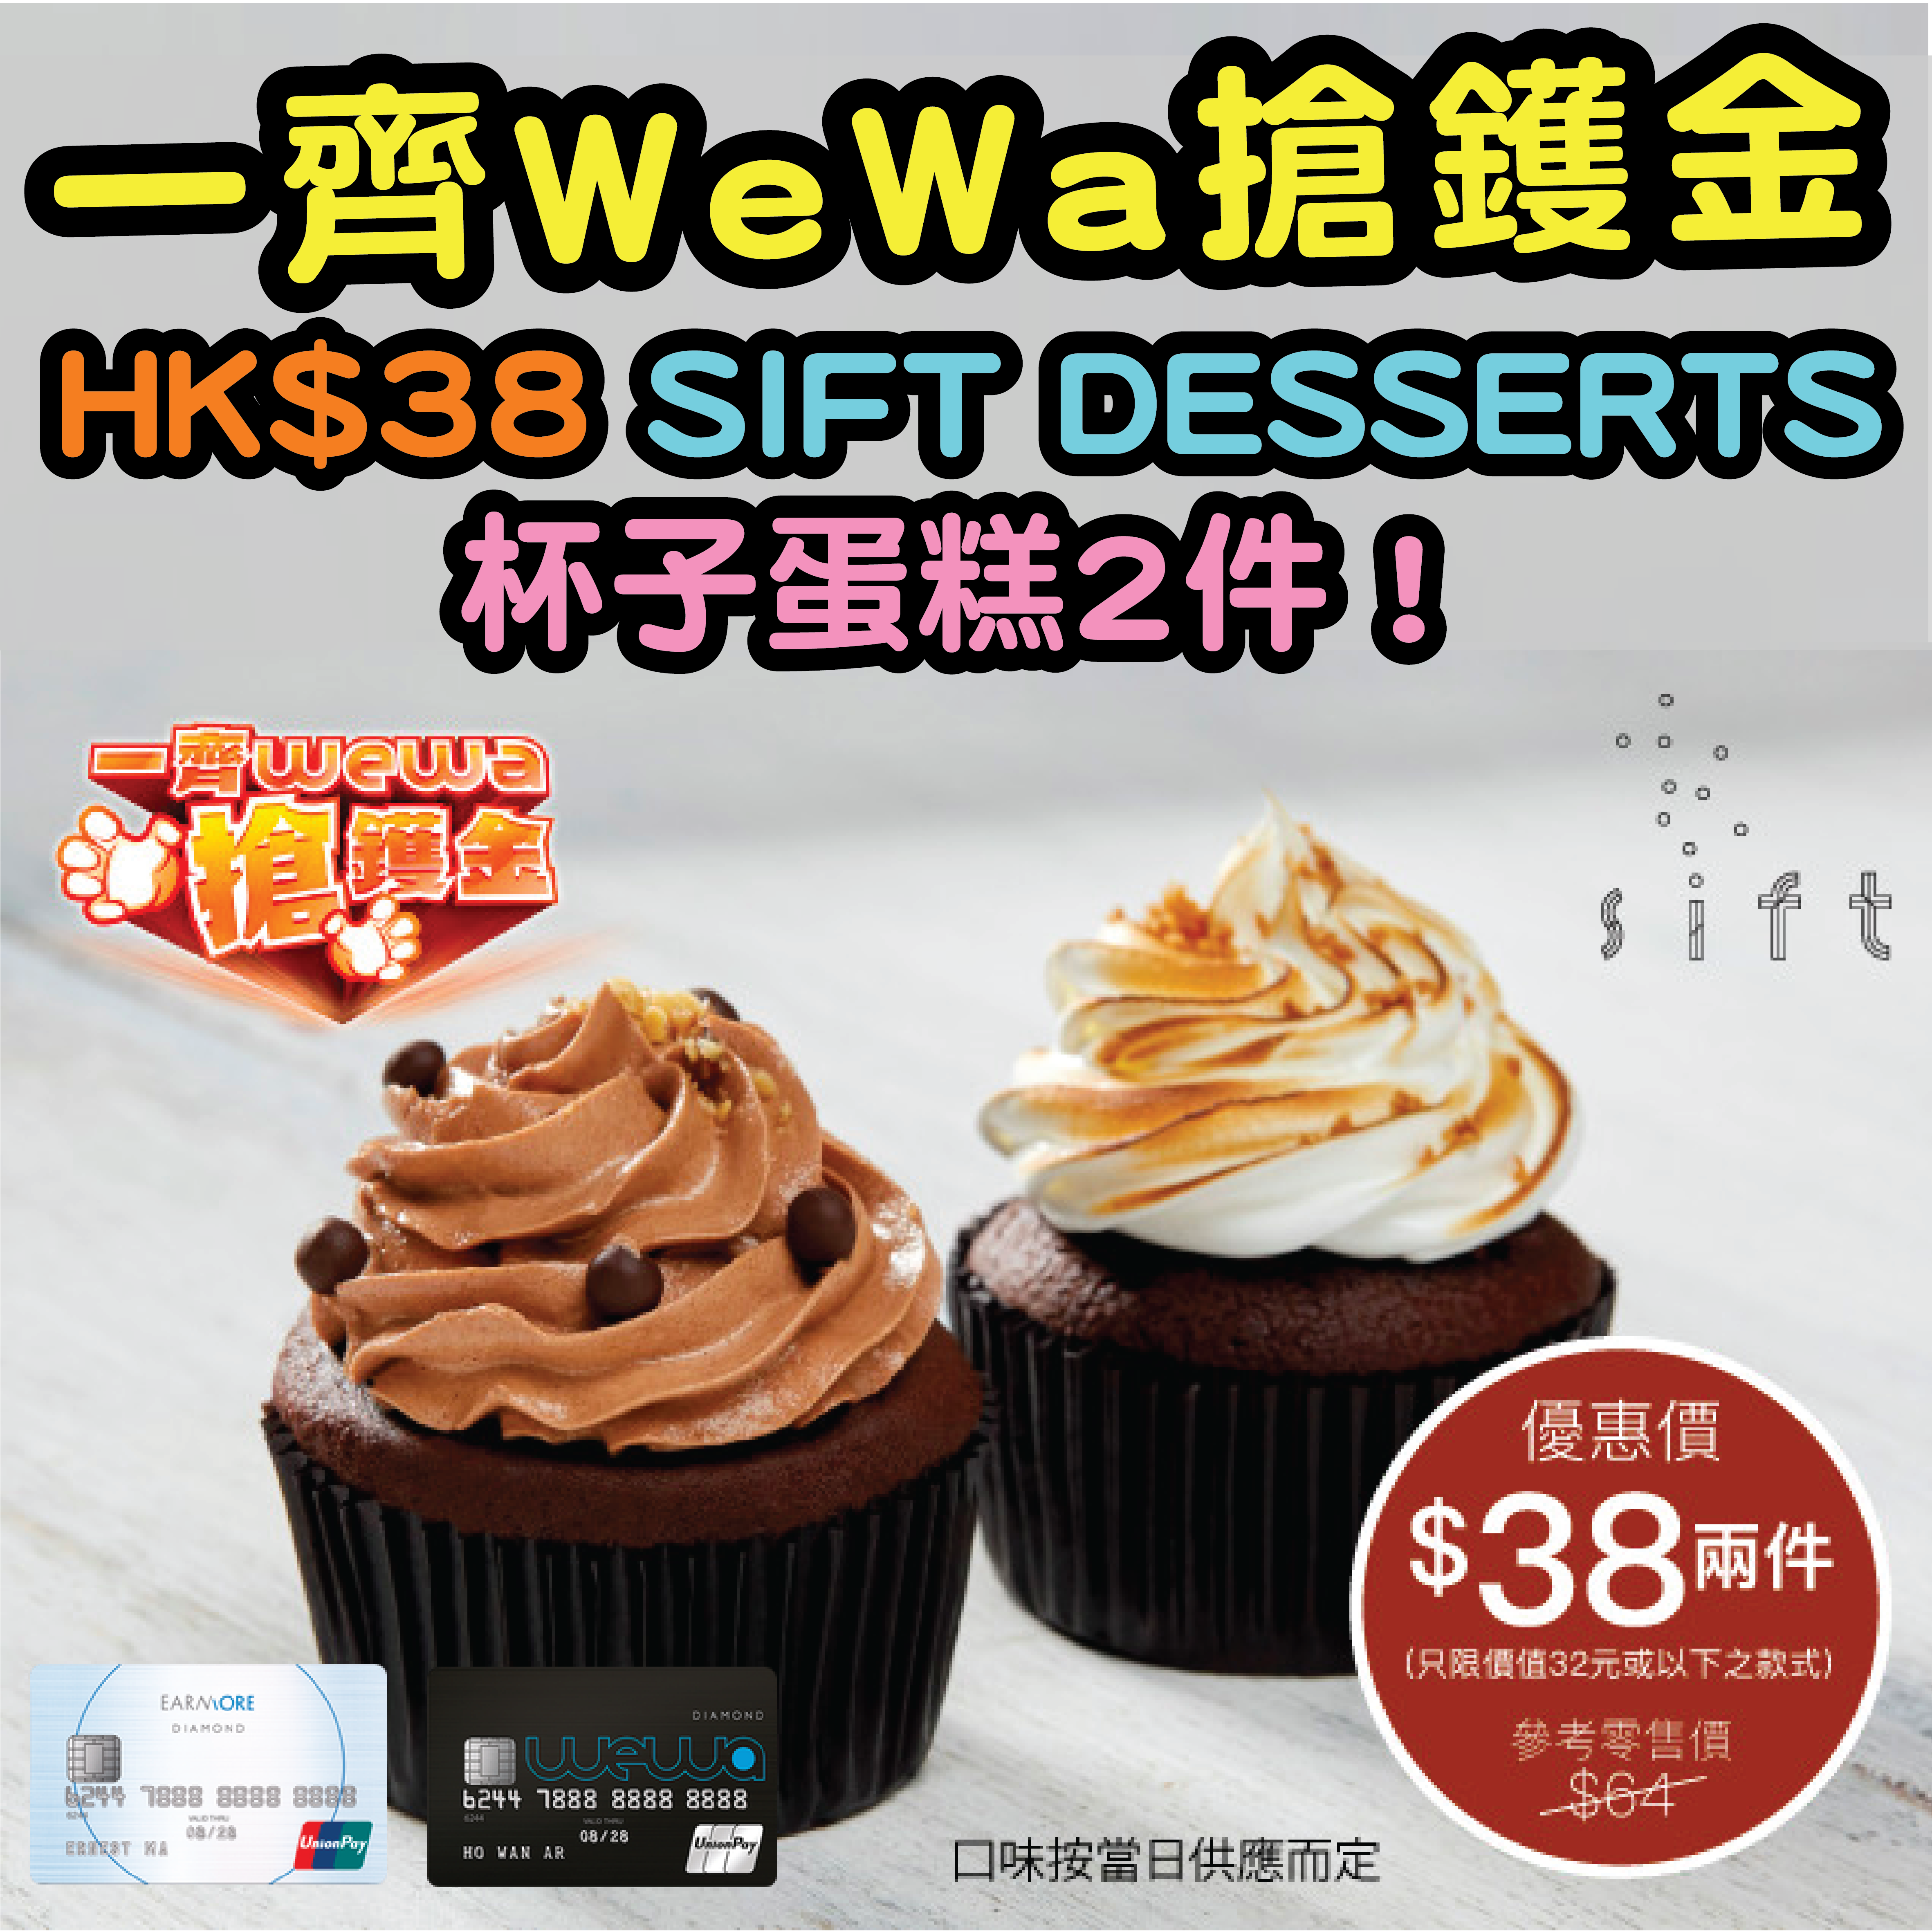 【一齊WeWa搶鑊金】6月4日12:00記得搶！安信EarnMORE / 安信WeWa卡 HK$38 SIFT DESSERTS 杯子蛋糕2件！